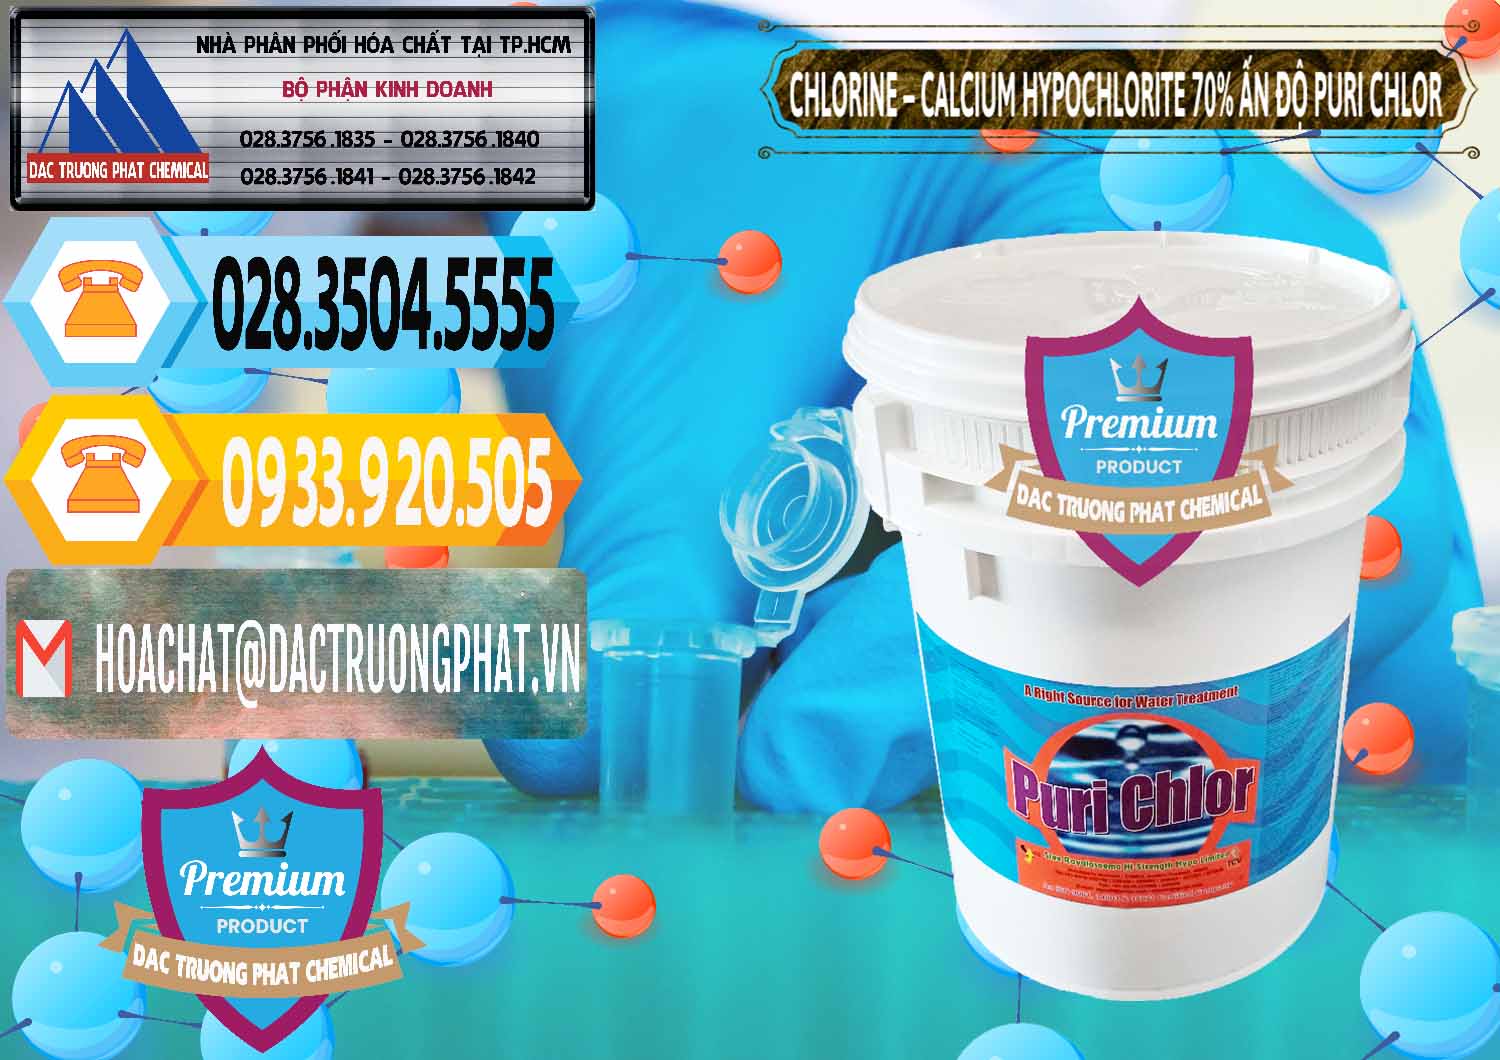 Cty chuyên nhập khẩu ( bán ) Chlorine – Clorin 70% Puri Chlo Ấn Độ India - 0123 - Kinh doanh _ phân phối hóa chất tại TP.HCM - hoachattayrua.net